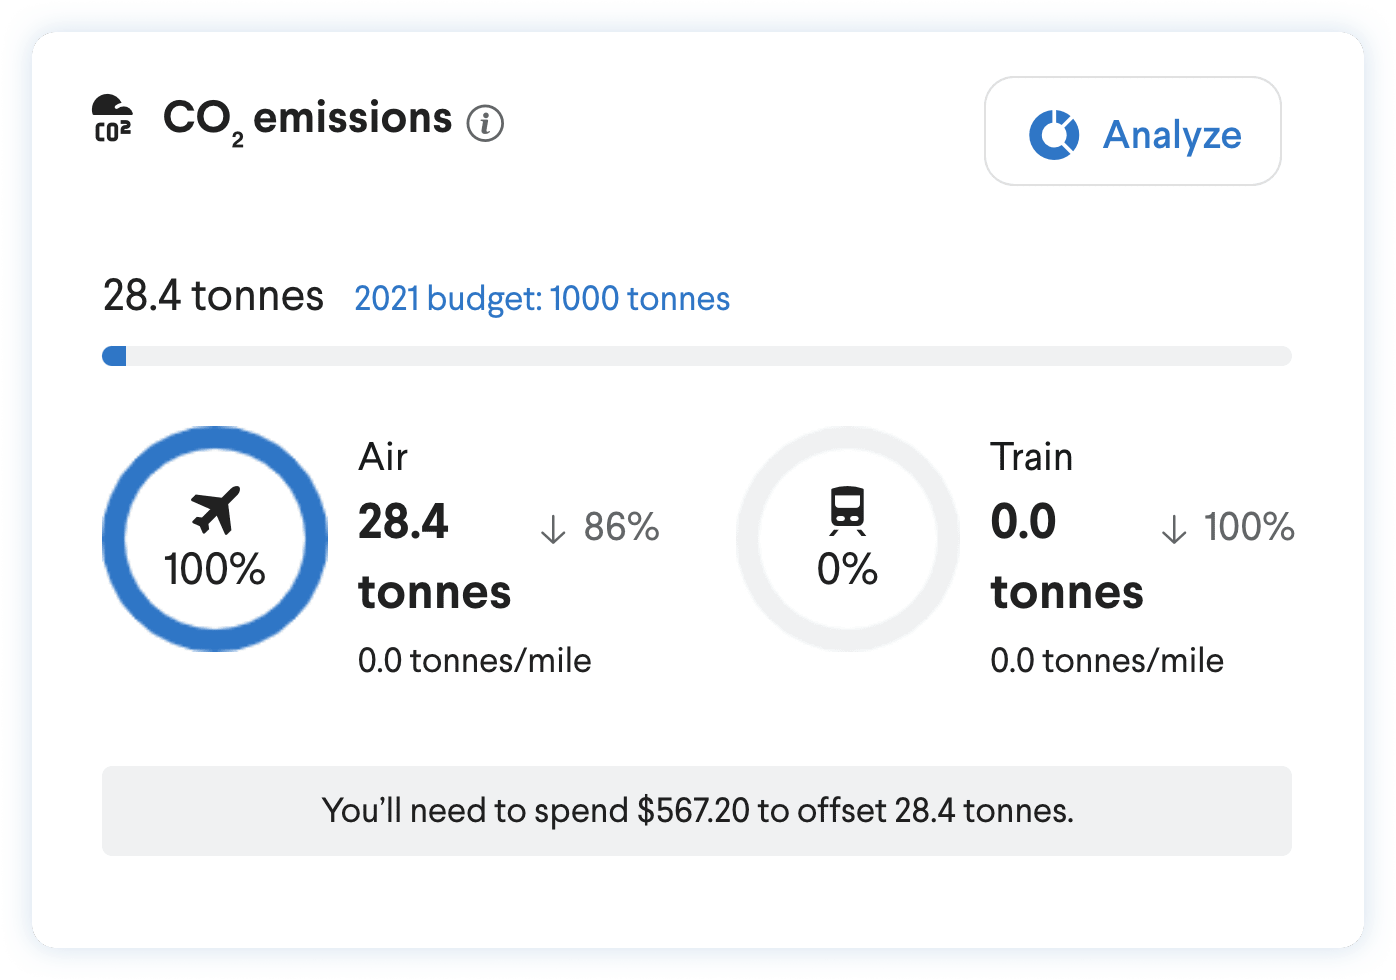 Product screenshot of CO2 emissions data